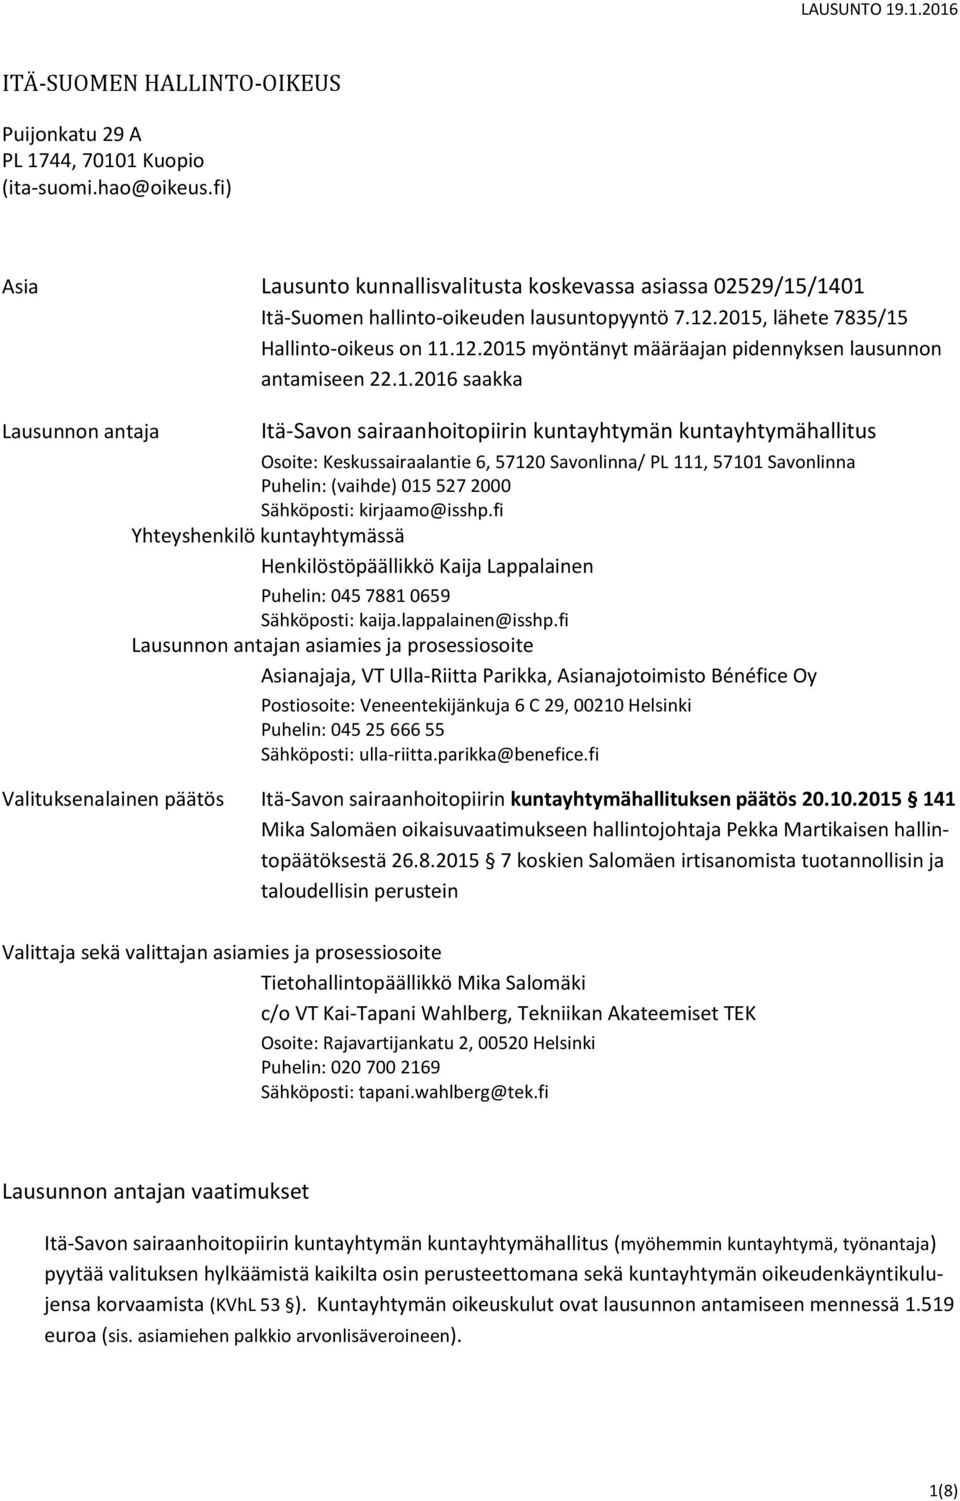 1.2016 saakka Lausunnon antaja Itä-Savon sairaanhoitopiirin kuntayhtymän kuntayhtymähallitus Osoite: Keskussairaalantie 6, 57120 Savonlinna/ PL 111, 57101 Savonlinna Puhelin: (vaihde) 015 527 2000